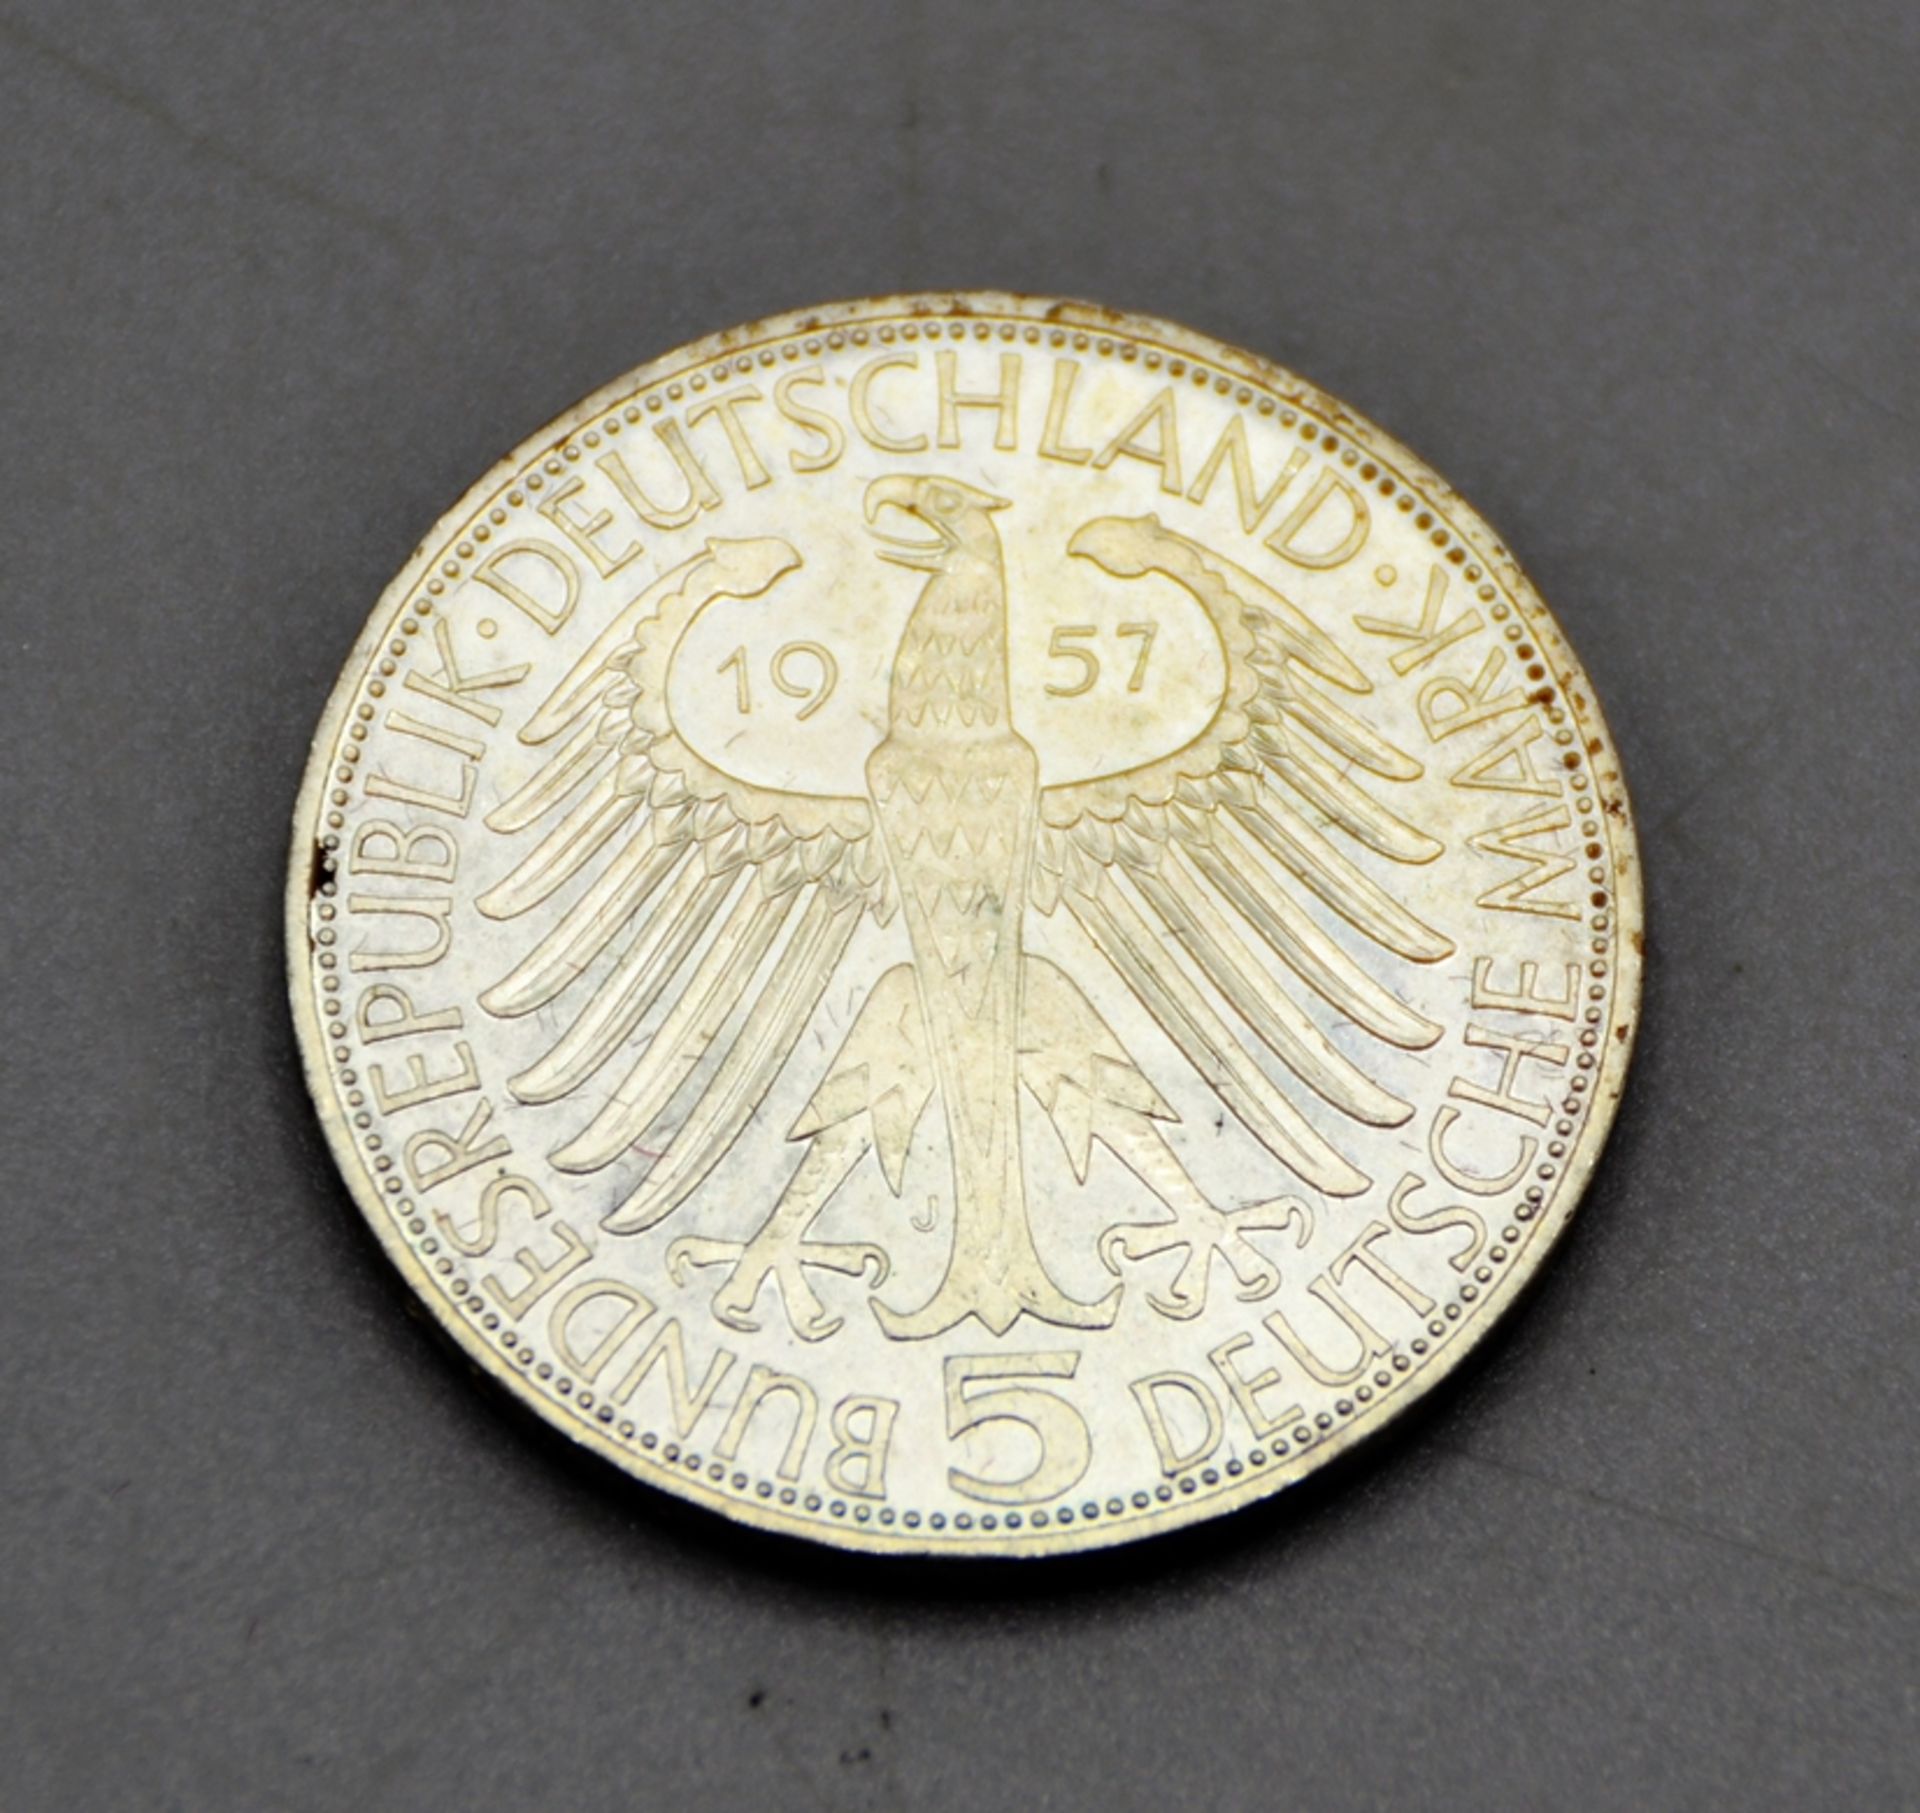 5 DM 1957 J Joseph Freiherr von Eichendorff Gedenkmünze Silber, minimaler Randfehler (kaum sichtbar - Image 2 of 2